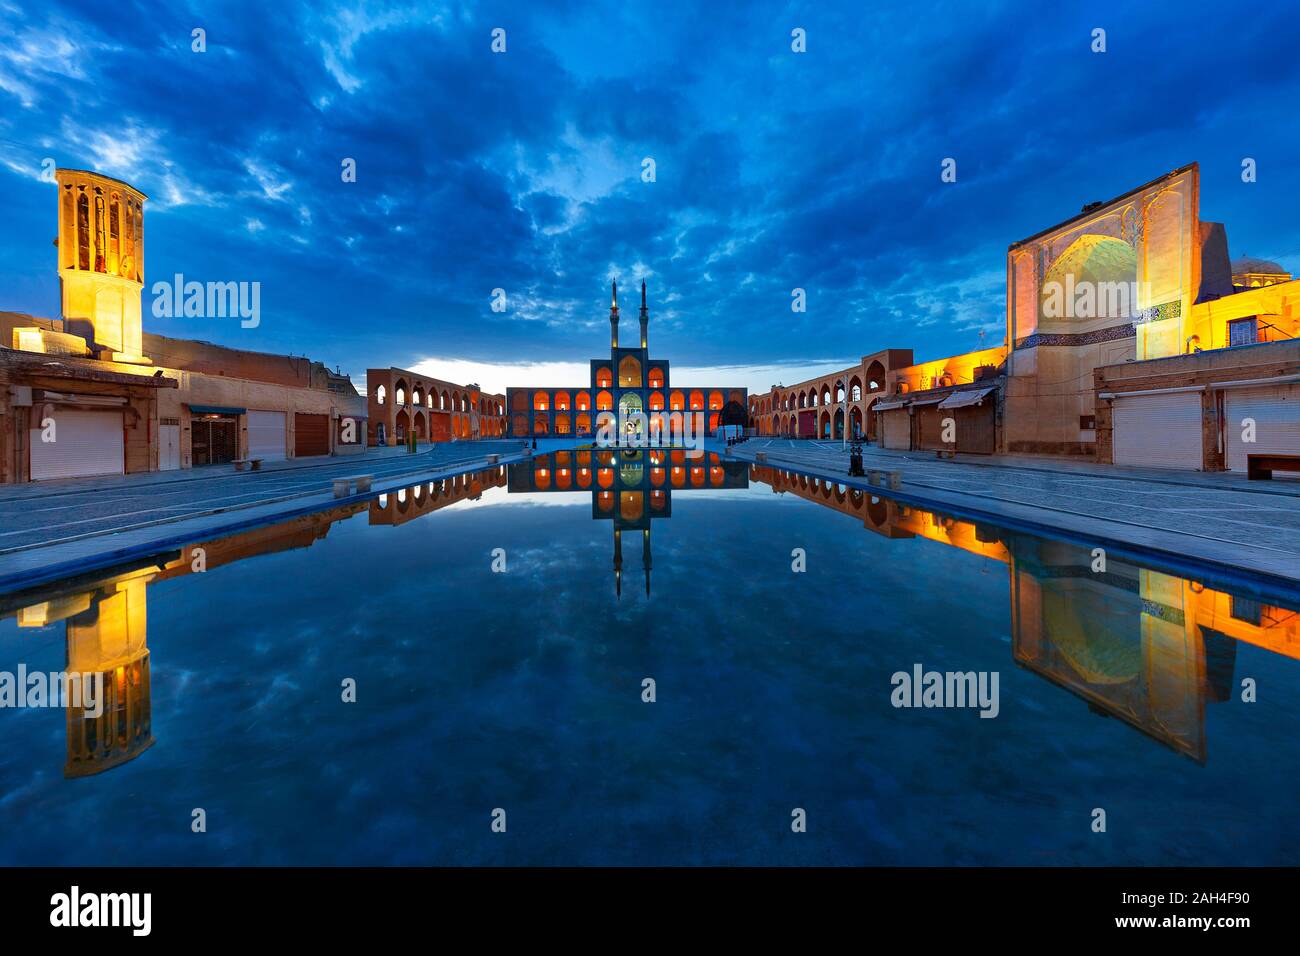 Amir Chakhmaq mezquita y su reflejo en la piscina, en la penumbra, en Yazd, Irán Foto de stock